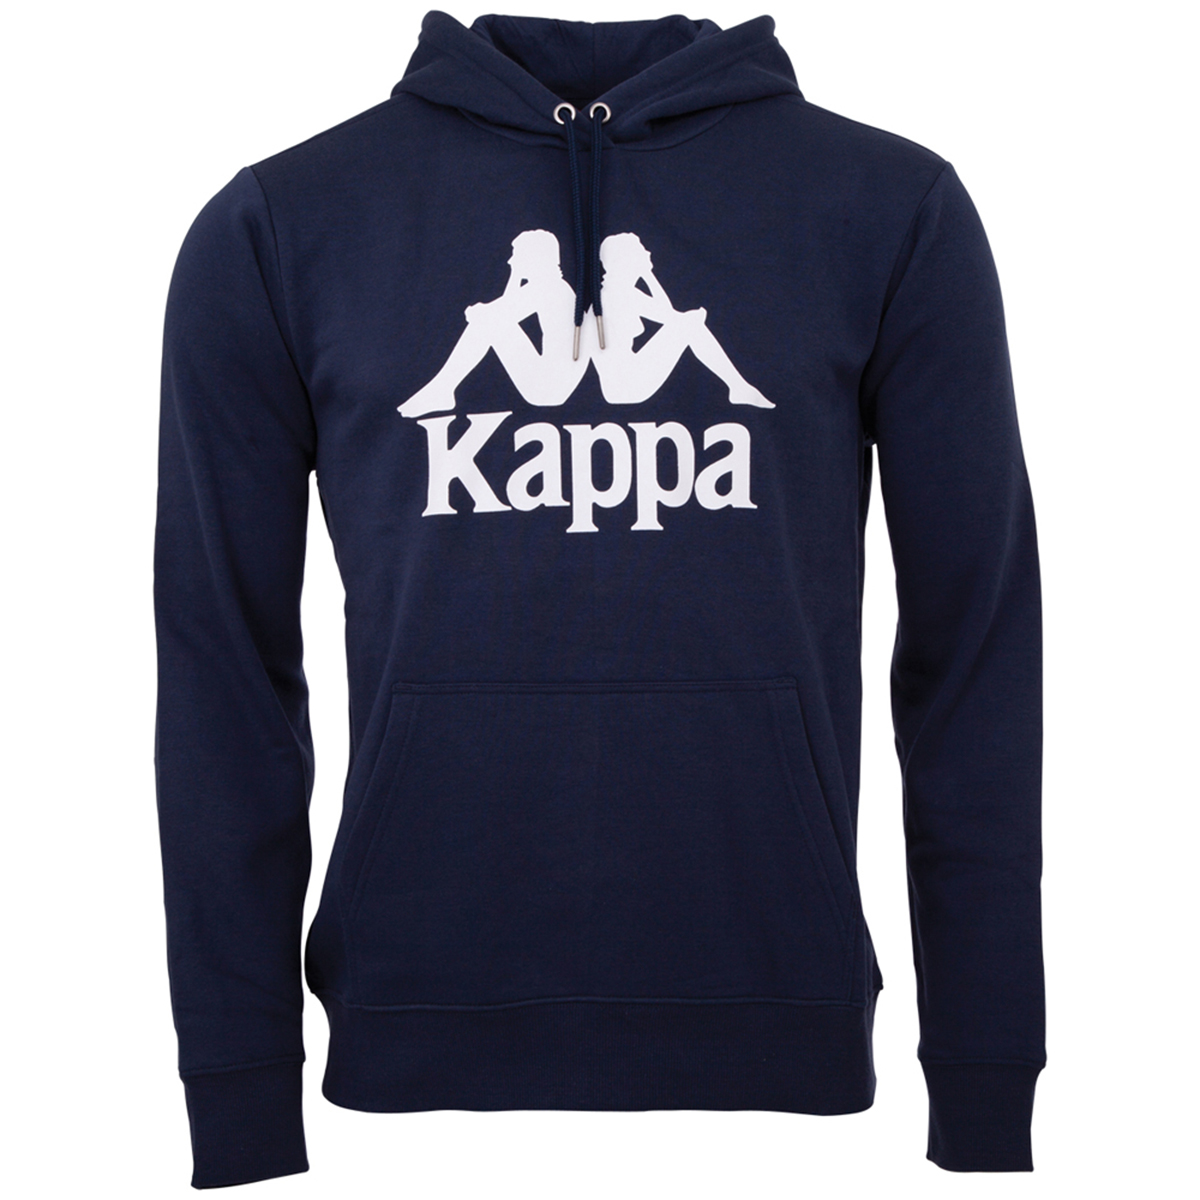 Kappa Unisex Kids Hooded Sweatshirt blau 705322 821